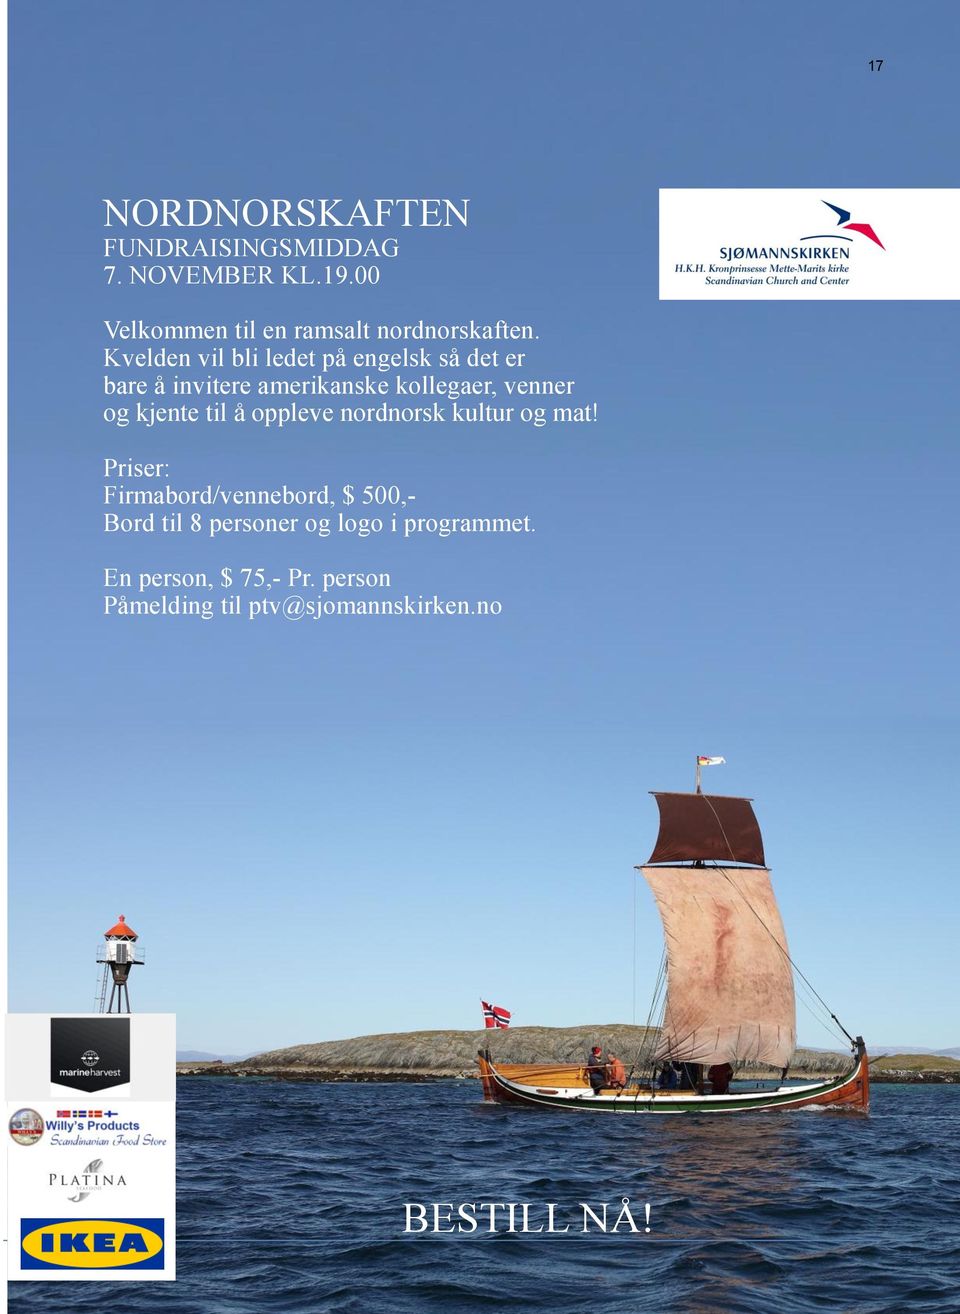 kjente til å oppleve nordnorsk kultur og mat!